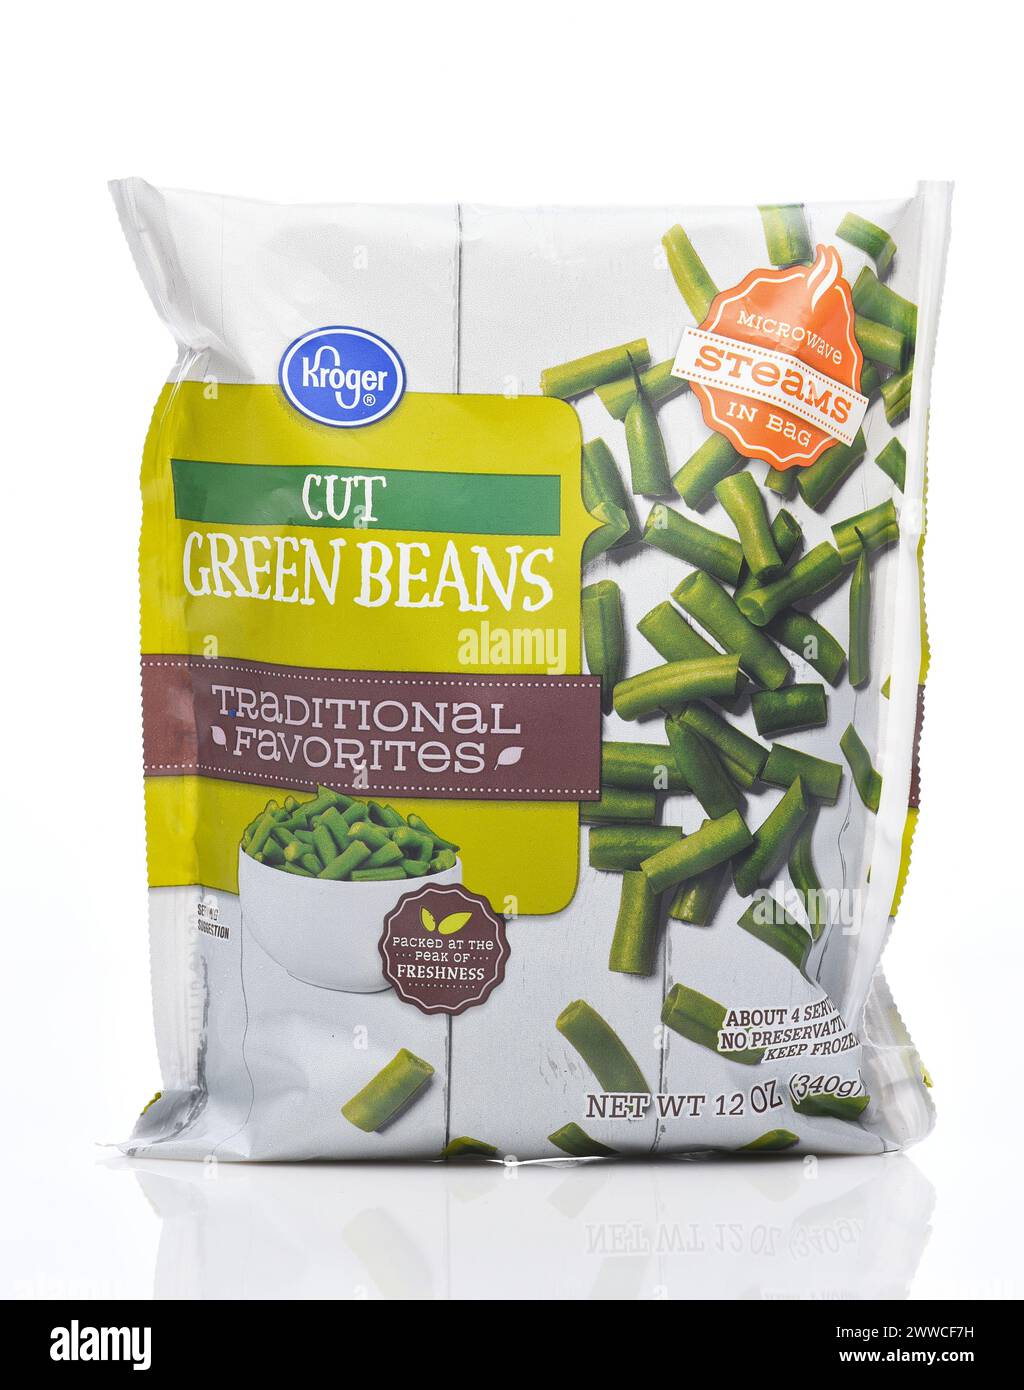 IRIVNE, CALIFORNIA - 21 MAR 2024: A package of Kroger Frozen Cut Green Beans. Stock Photo